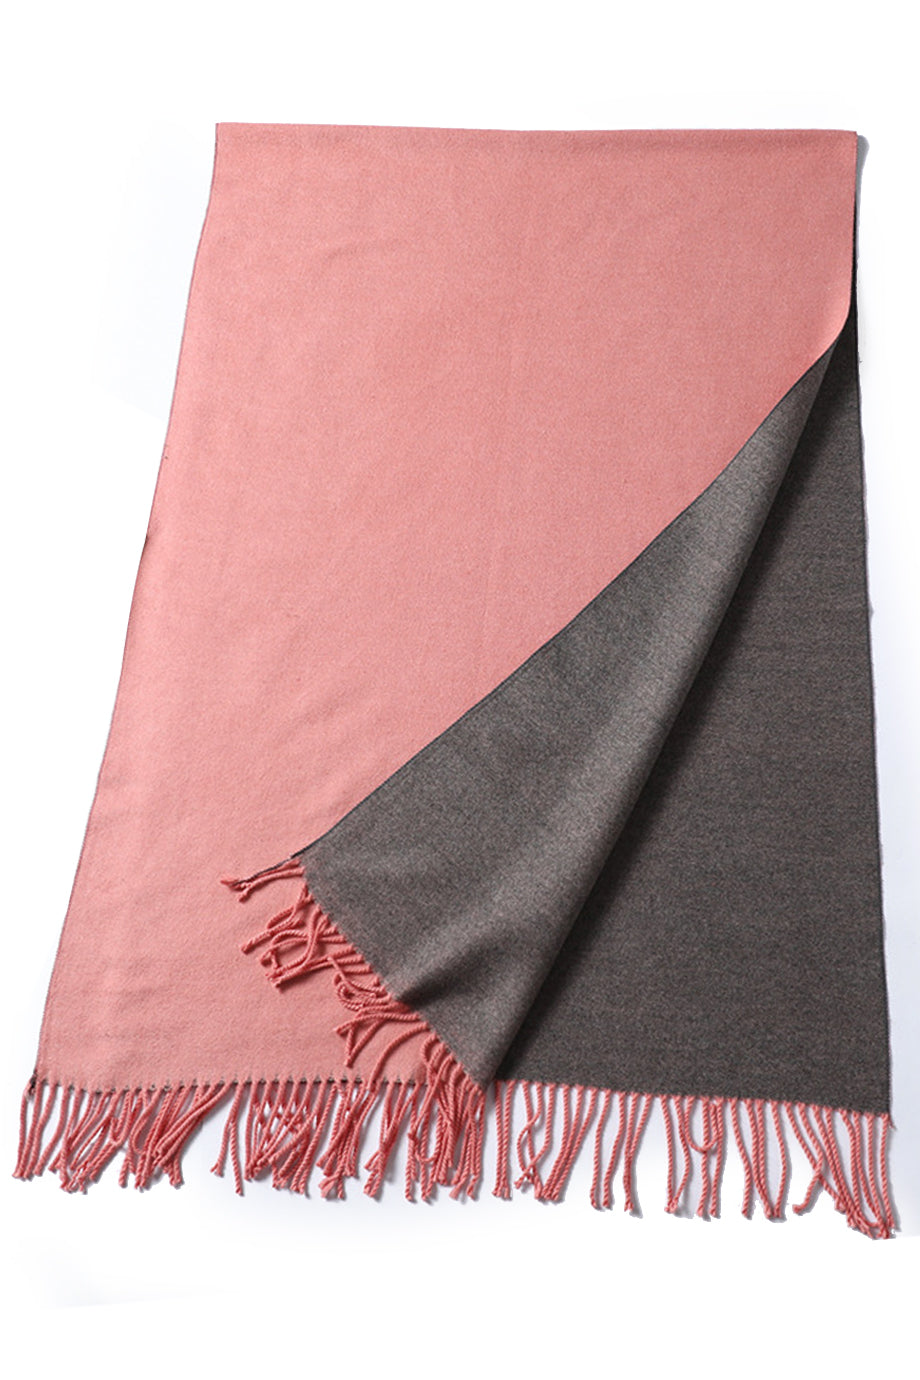 Malenia grijs licht mosterd tweekleurige sjaal sjaal